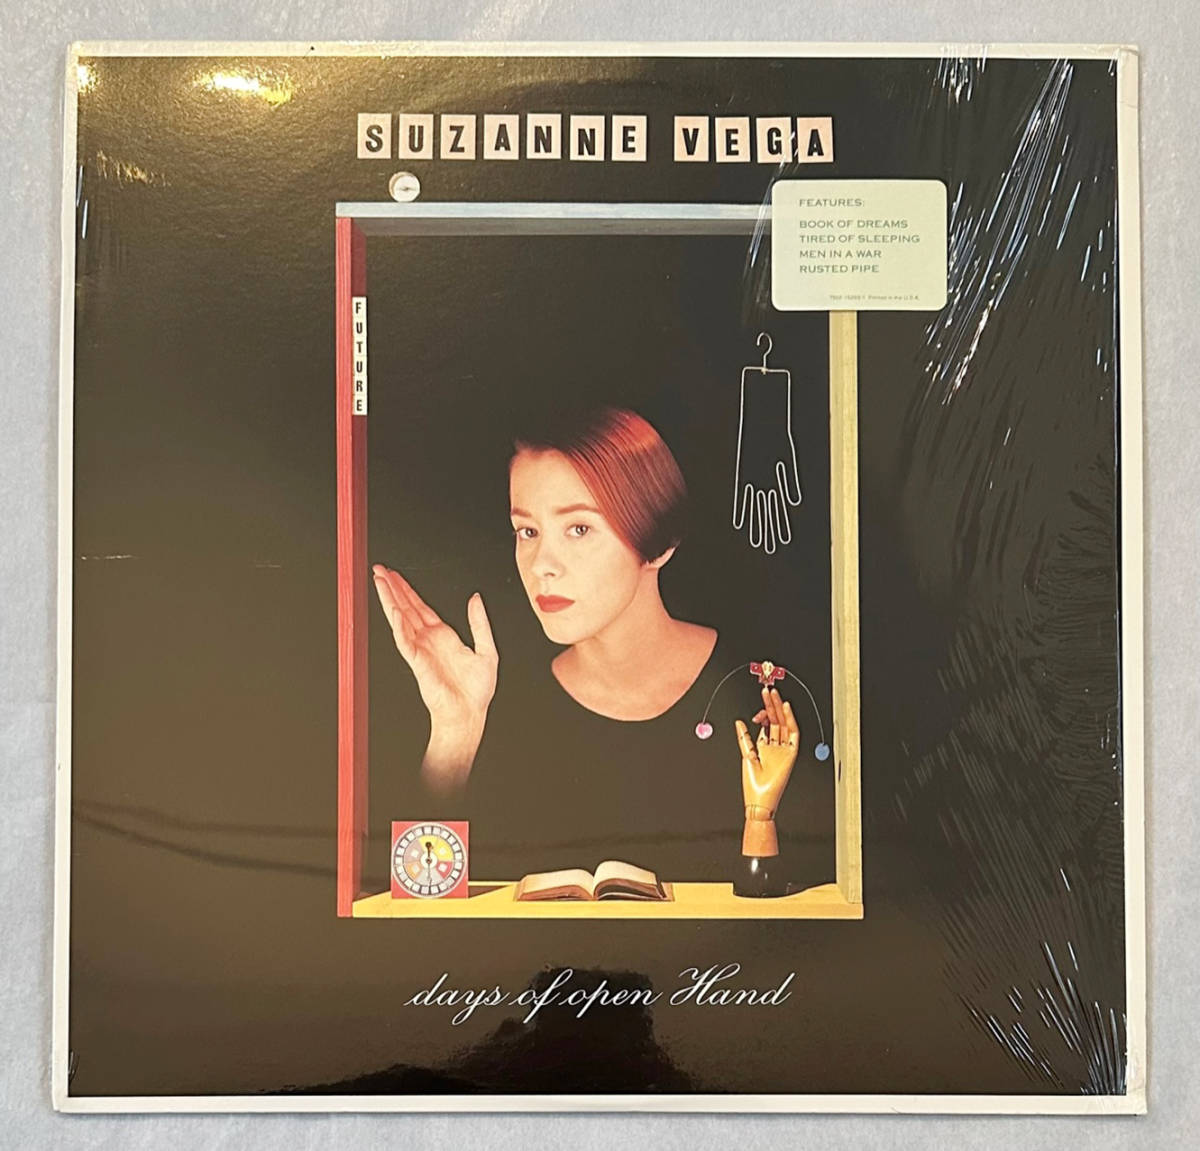 ■1990年 オリジナル US盤 Suzanne Vega - Days Of Open Hand 12”LP 7502-15293-1 A&M Recordsの画像1